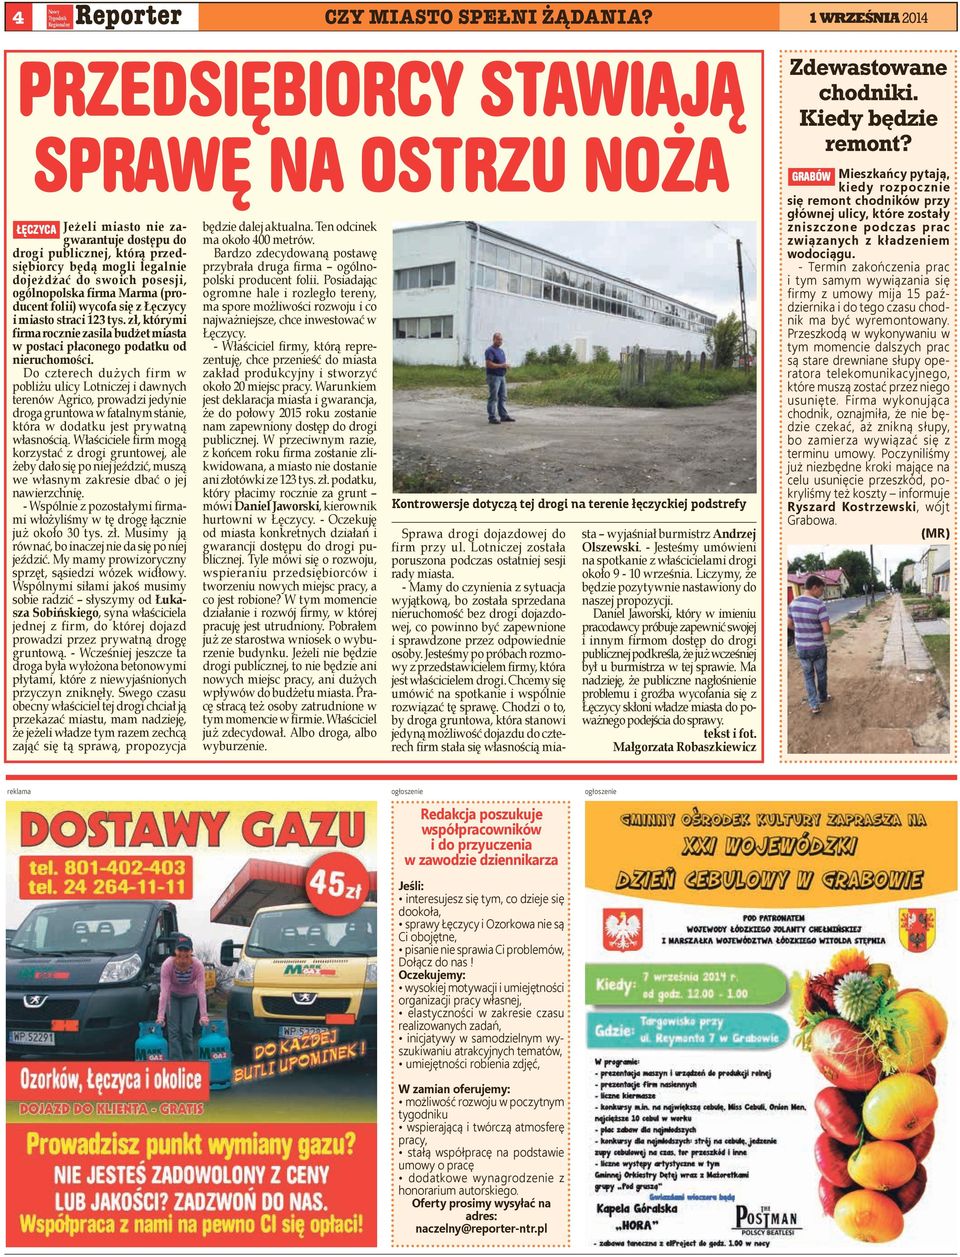 firma Marma (producent folii) wycofa się z Łęczycy i miasto straci 123 tys. zł, którymi firma rocznie zasila budżet miasta w postaci płaconego podatku od nieruchomości.